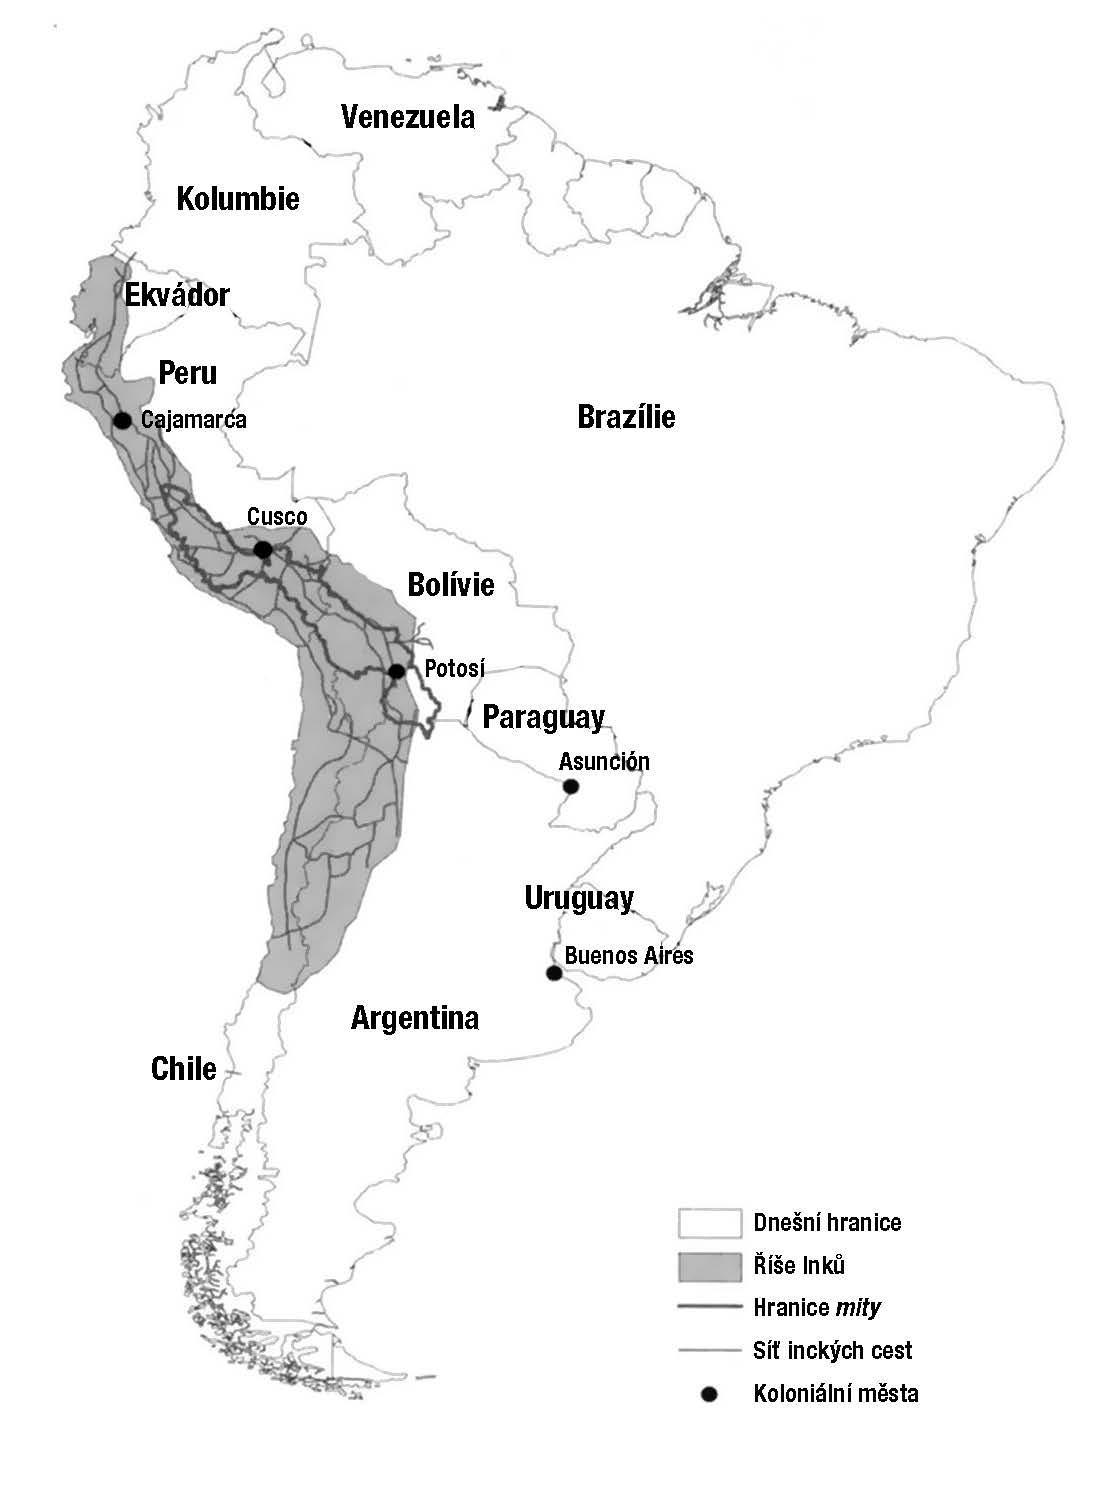 Mapka č. 1: Říše Inků, síť cest a sběrná oblast pro hornickou <em>mitu</em>